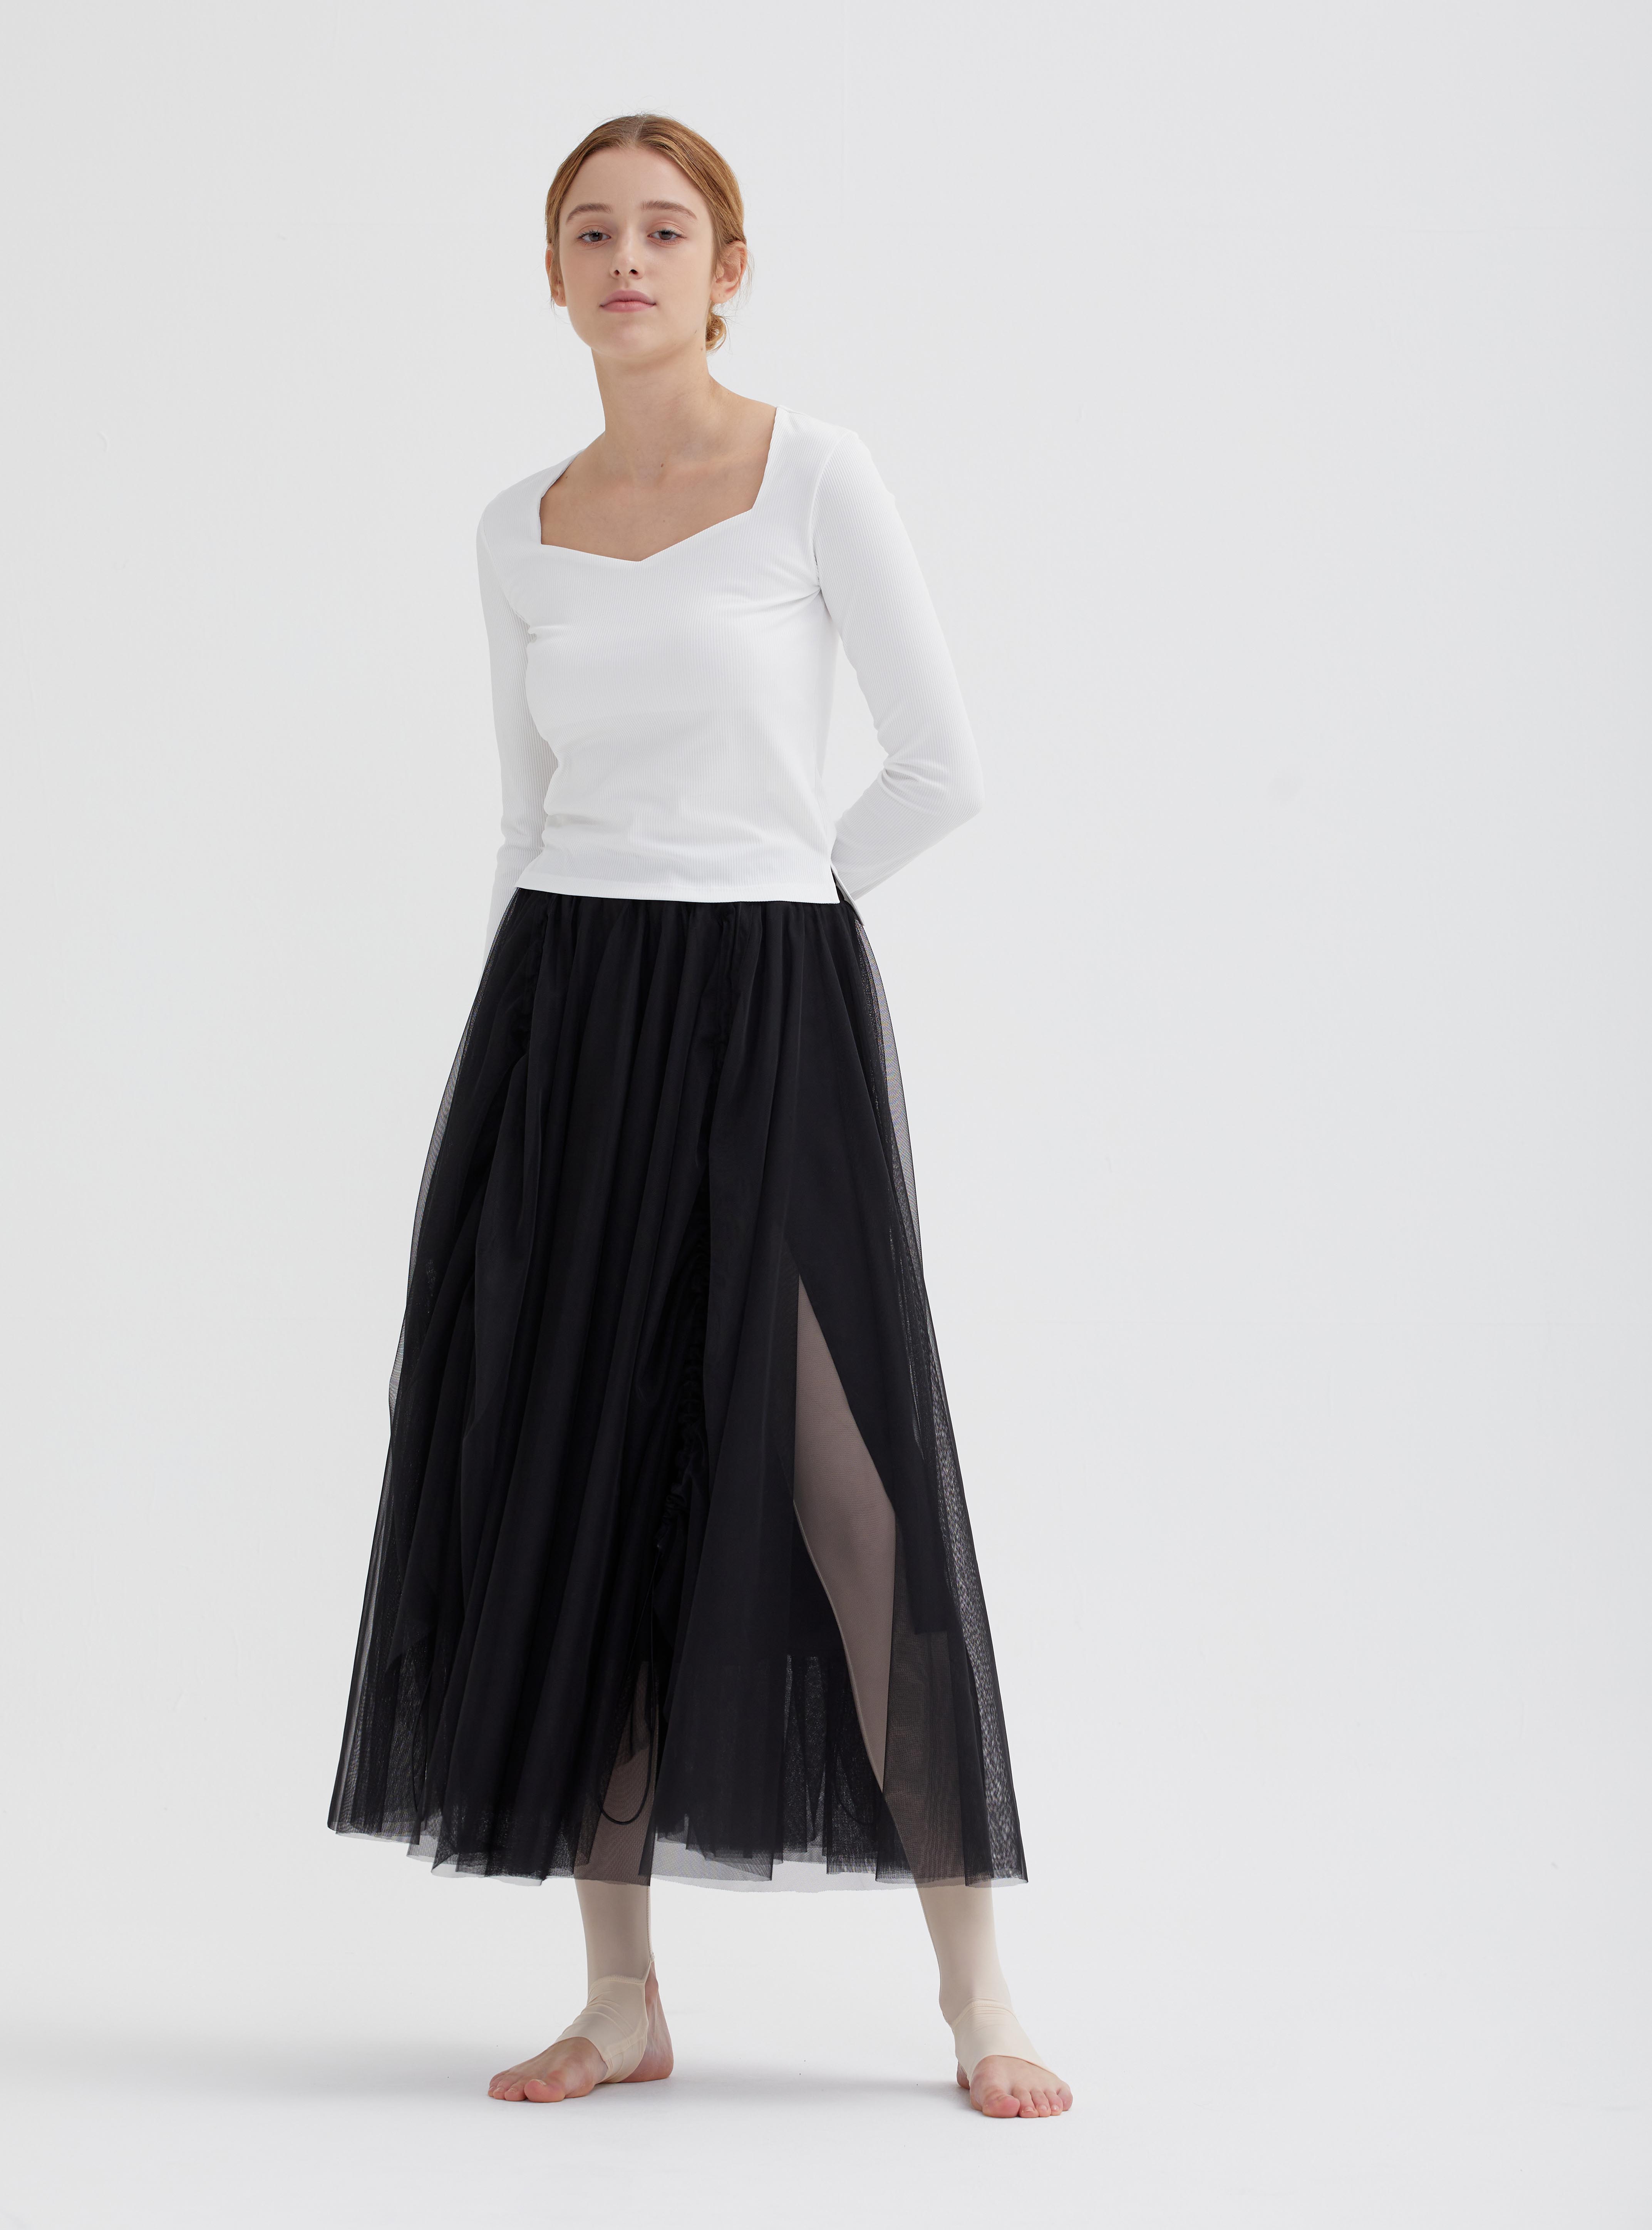 짐머만 스커트  Zimmermann skirt (2color)